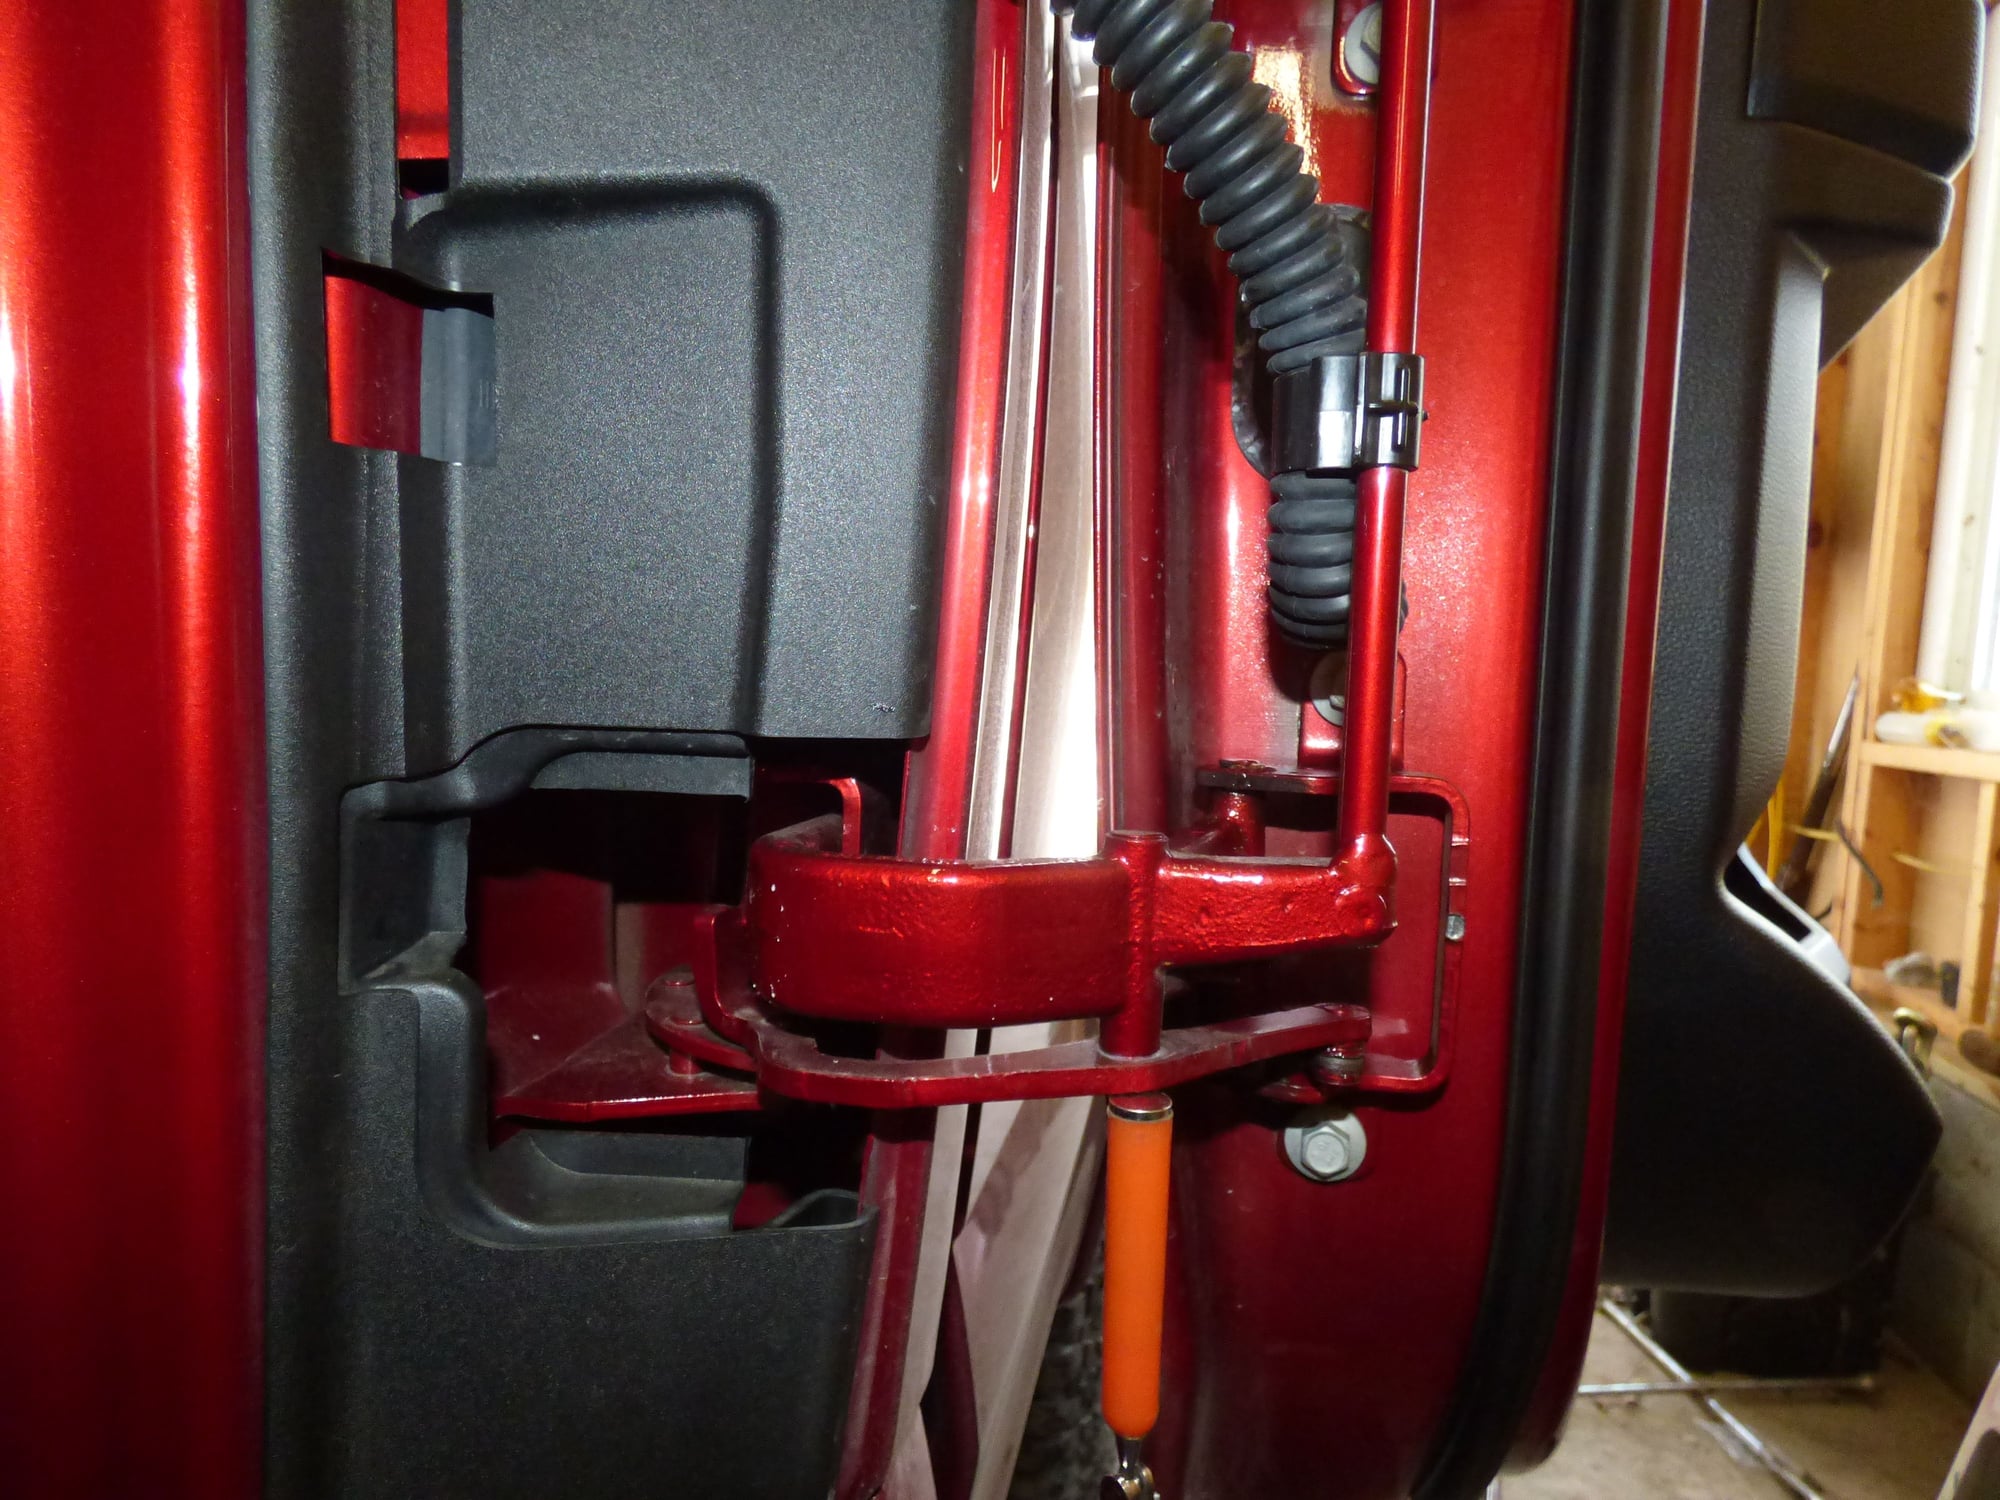 08 f150 scab interior doors handle replacement